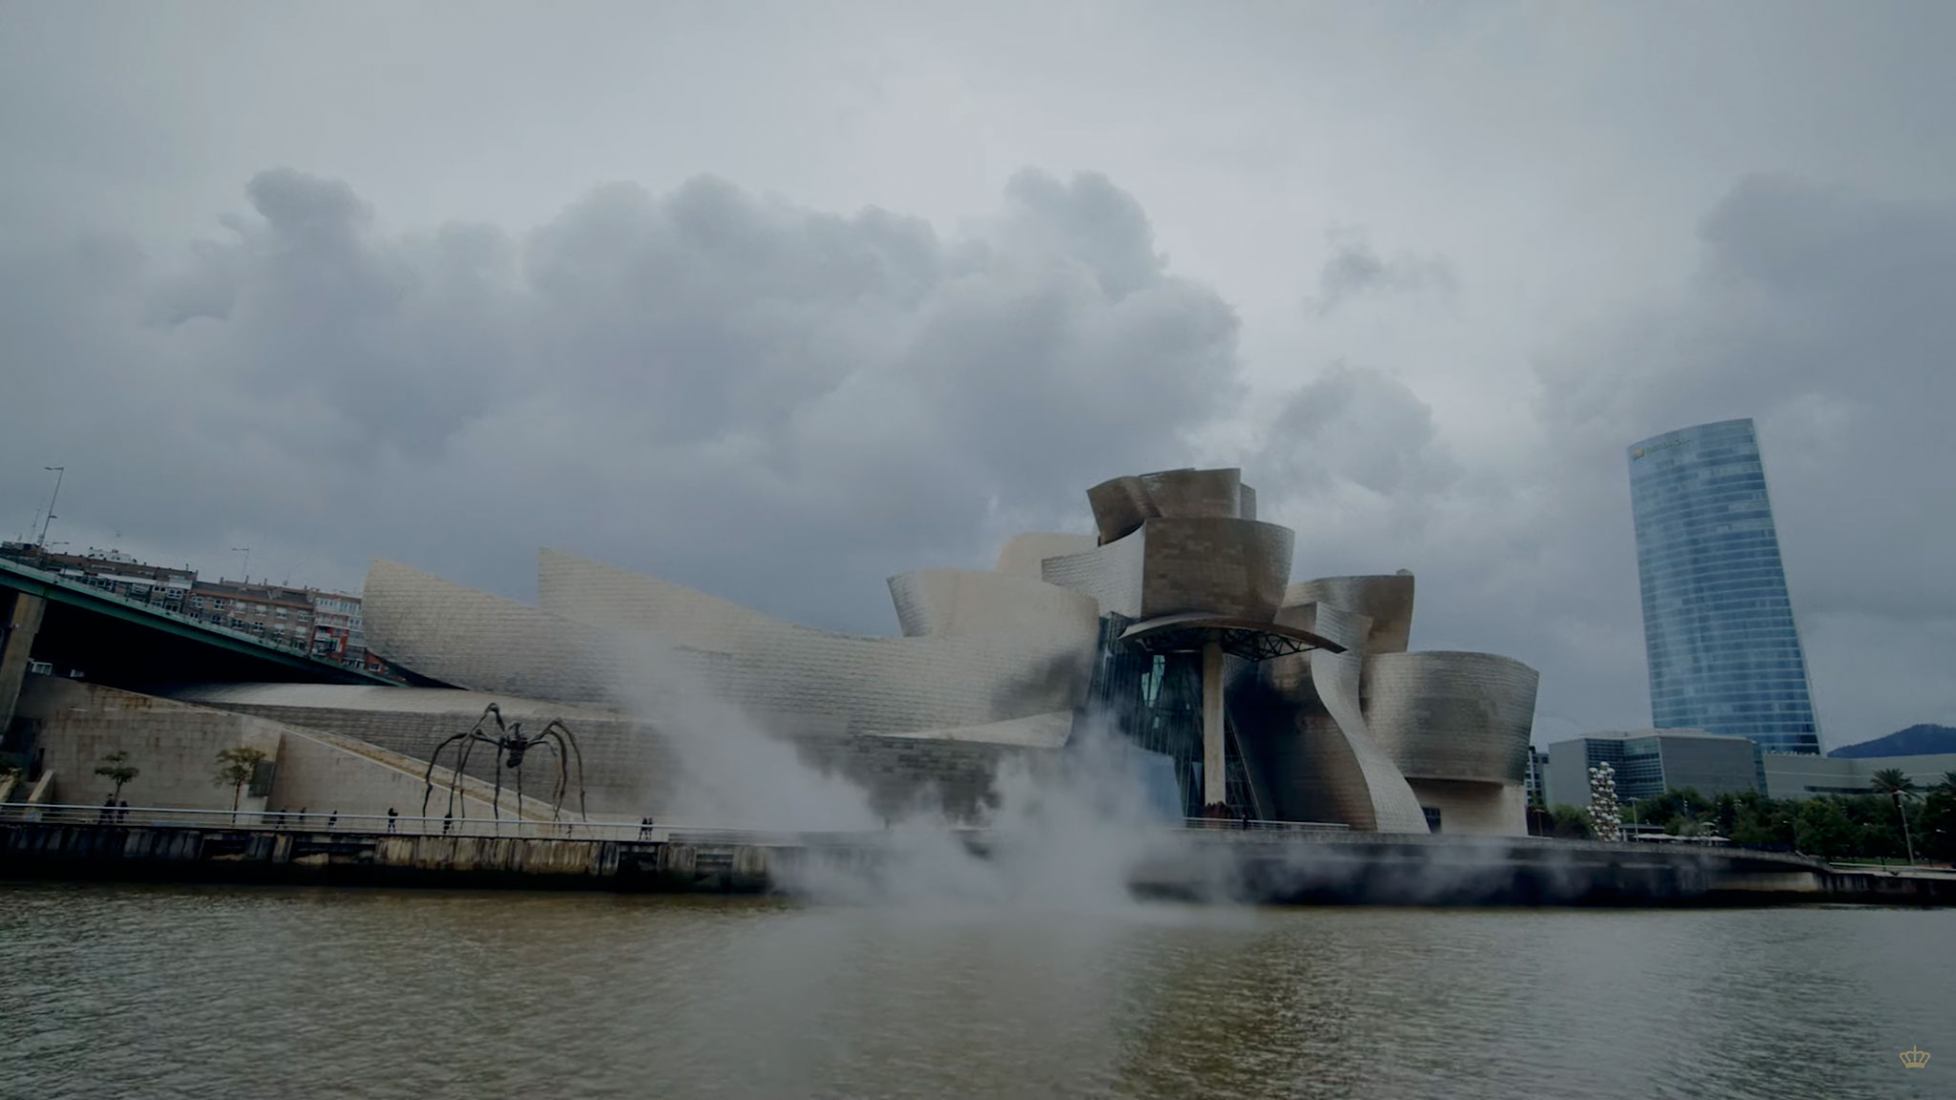 MONUMENTAL: Ep. 2 - Guggenheim Museum Bilbao by Koki Nakano.